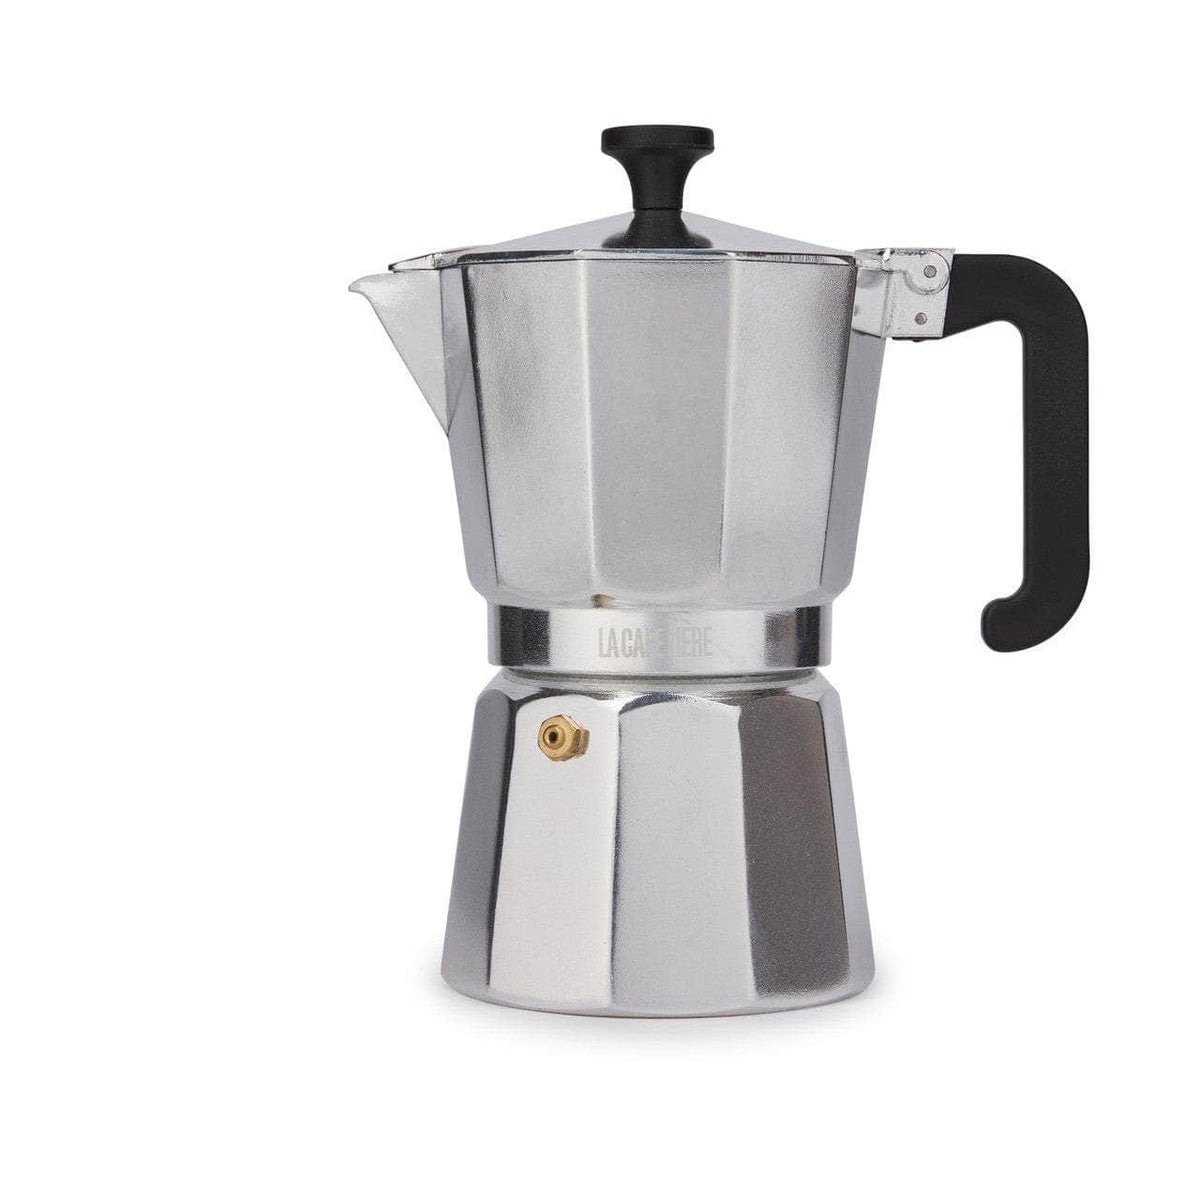 Polished Silver Aluminium Venice Espresso Maker (Moka Pot) 6 Cup